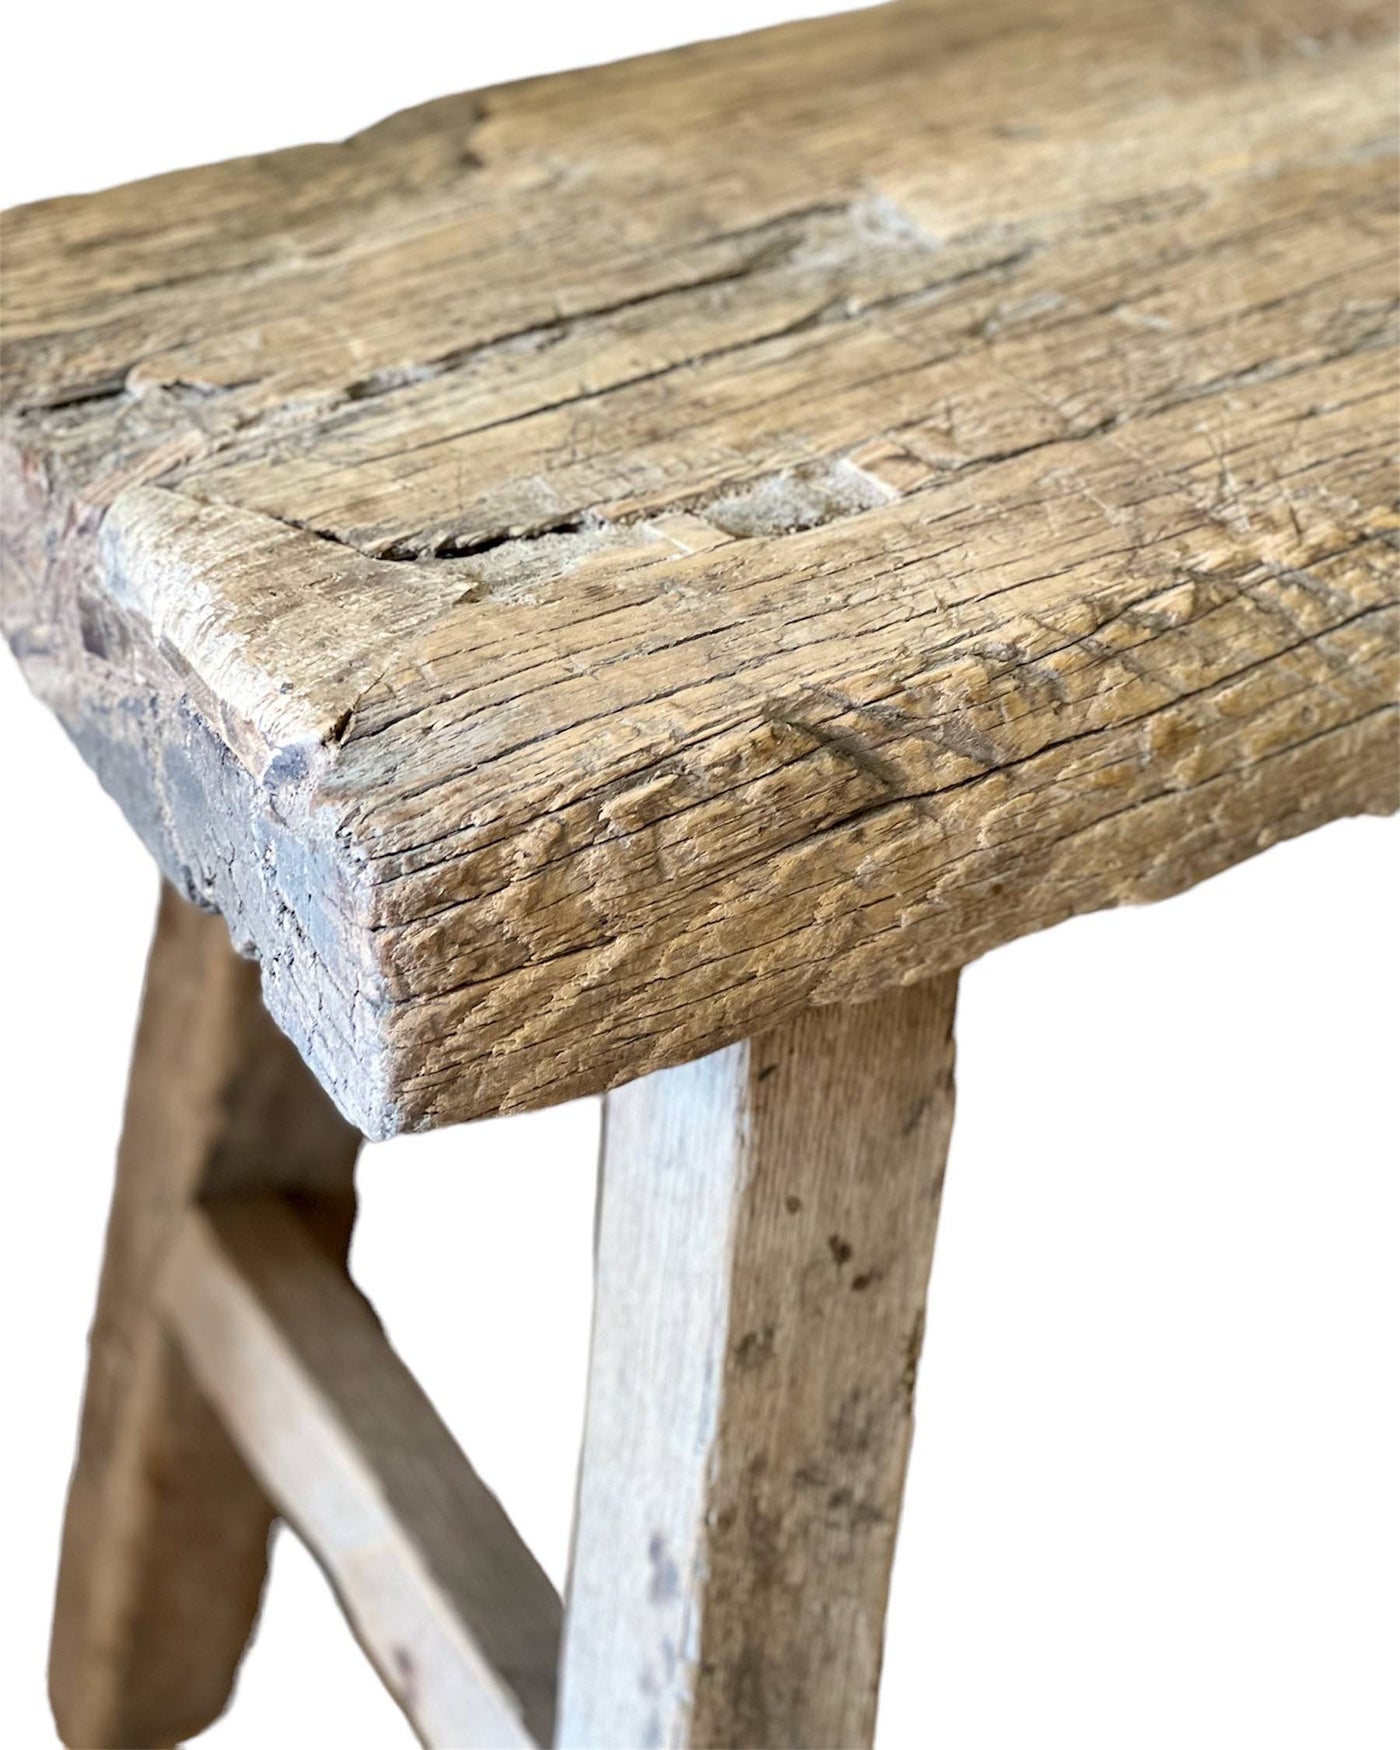 Vintage solid elm side table